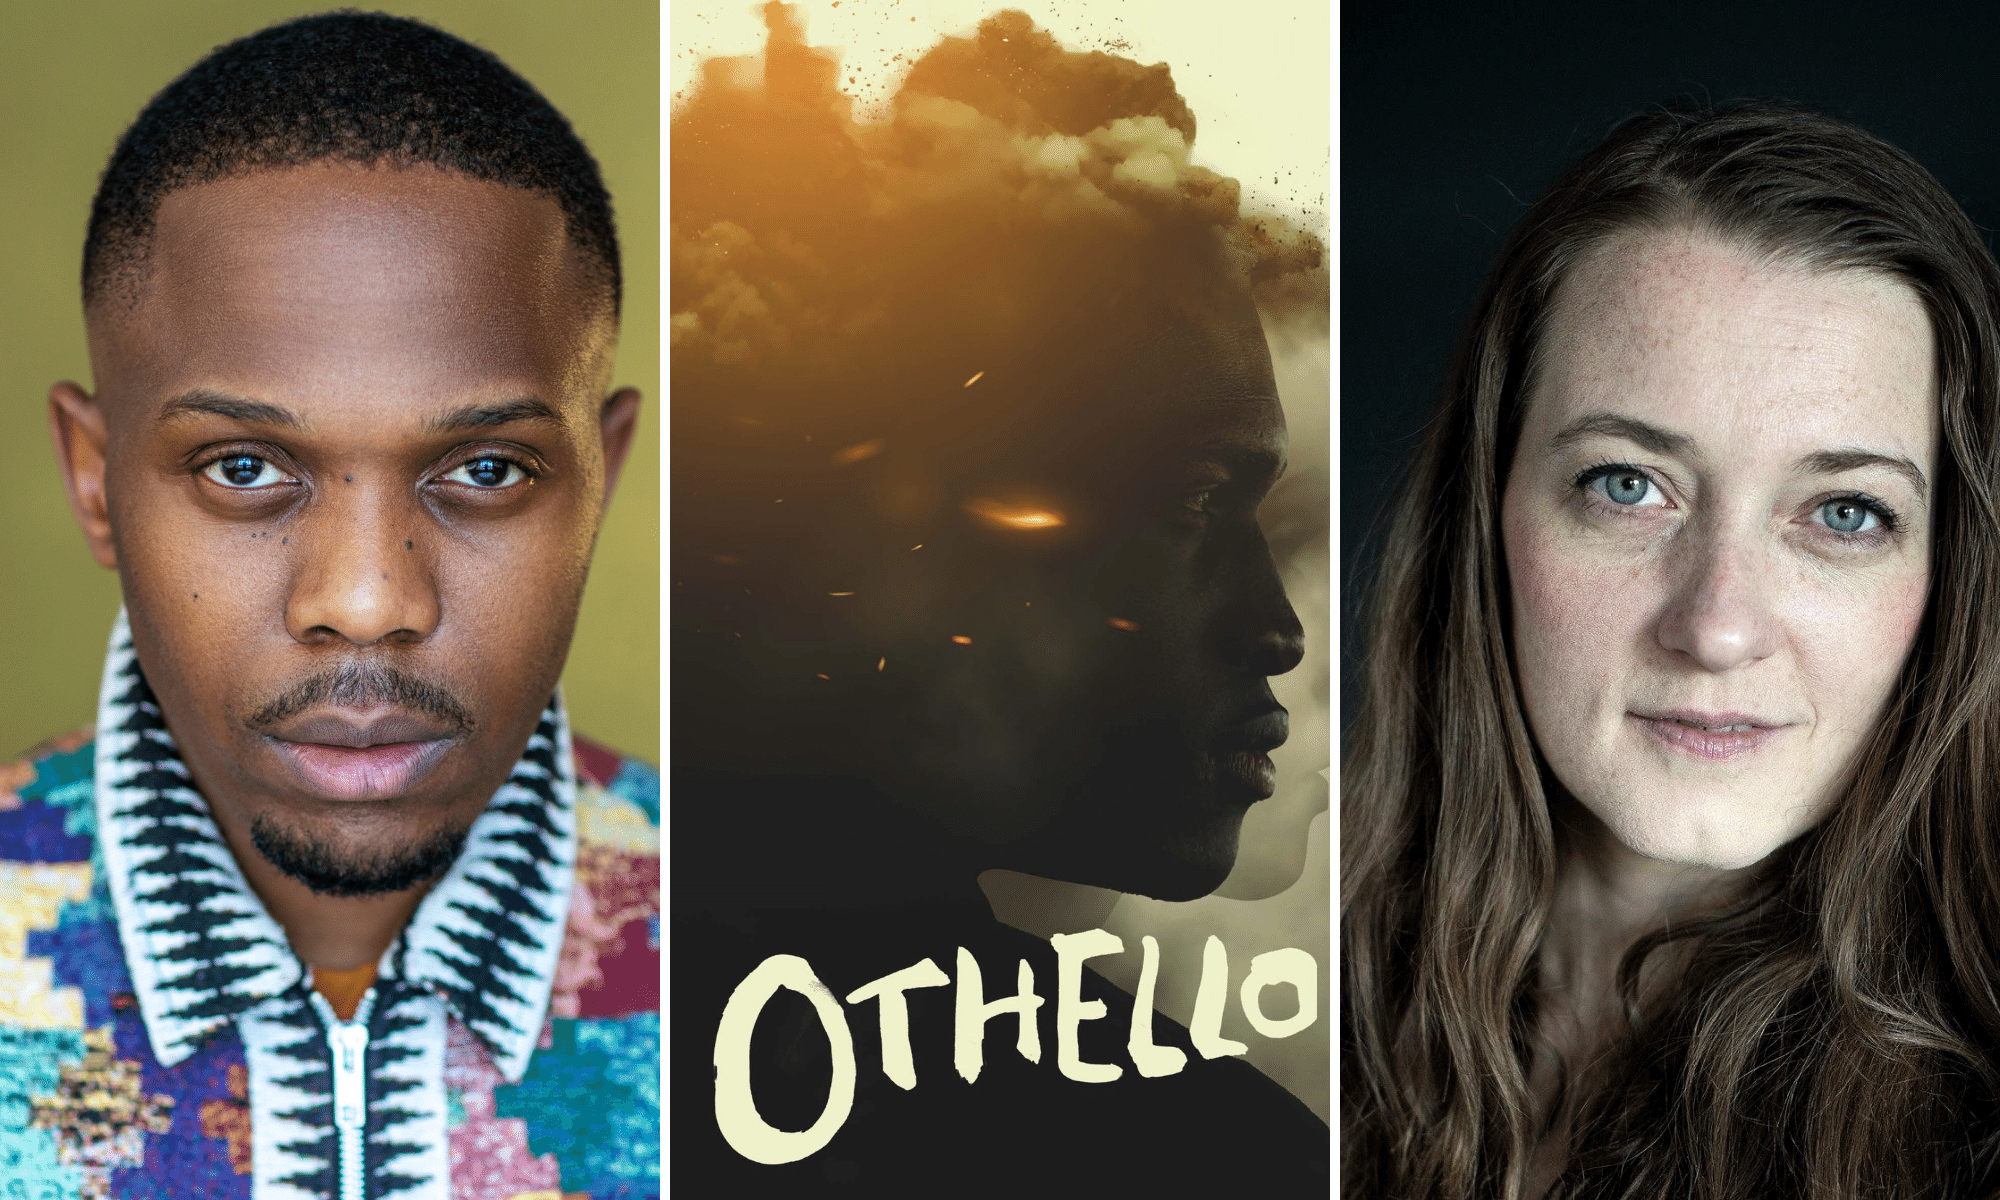 Othello News June 2017 - Othello News